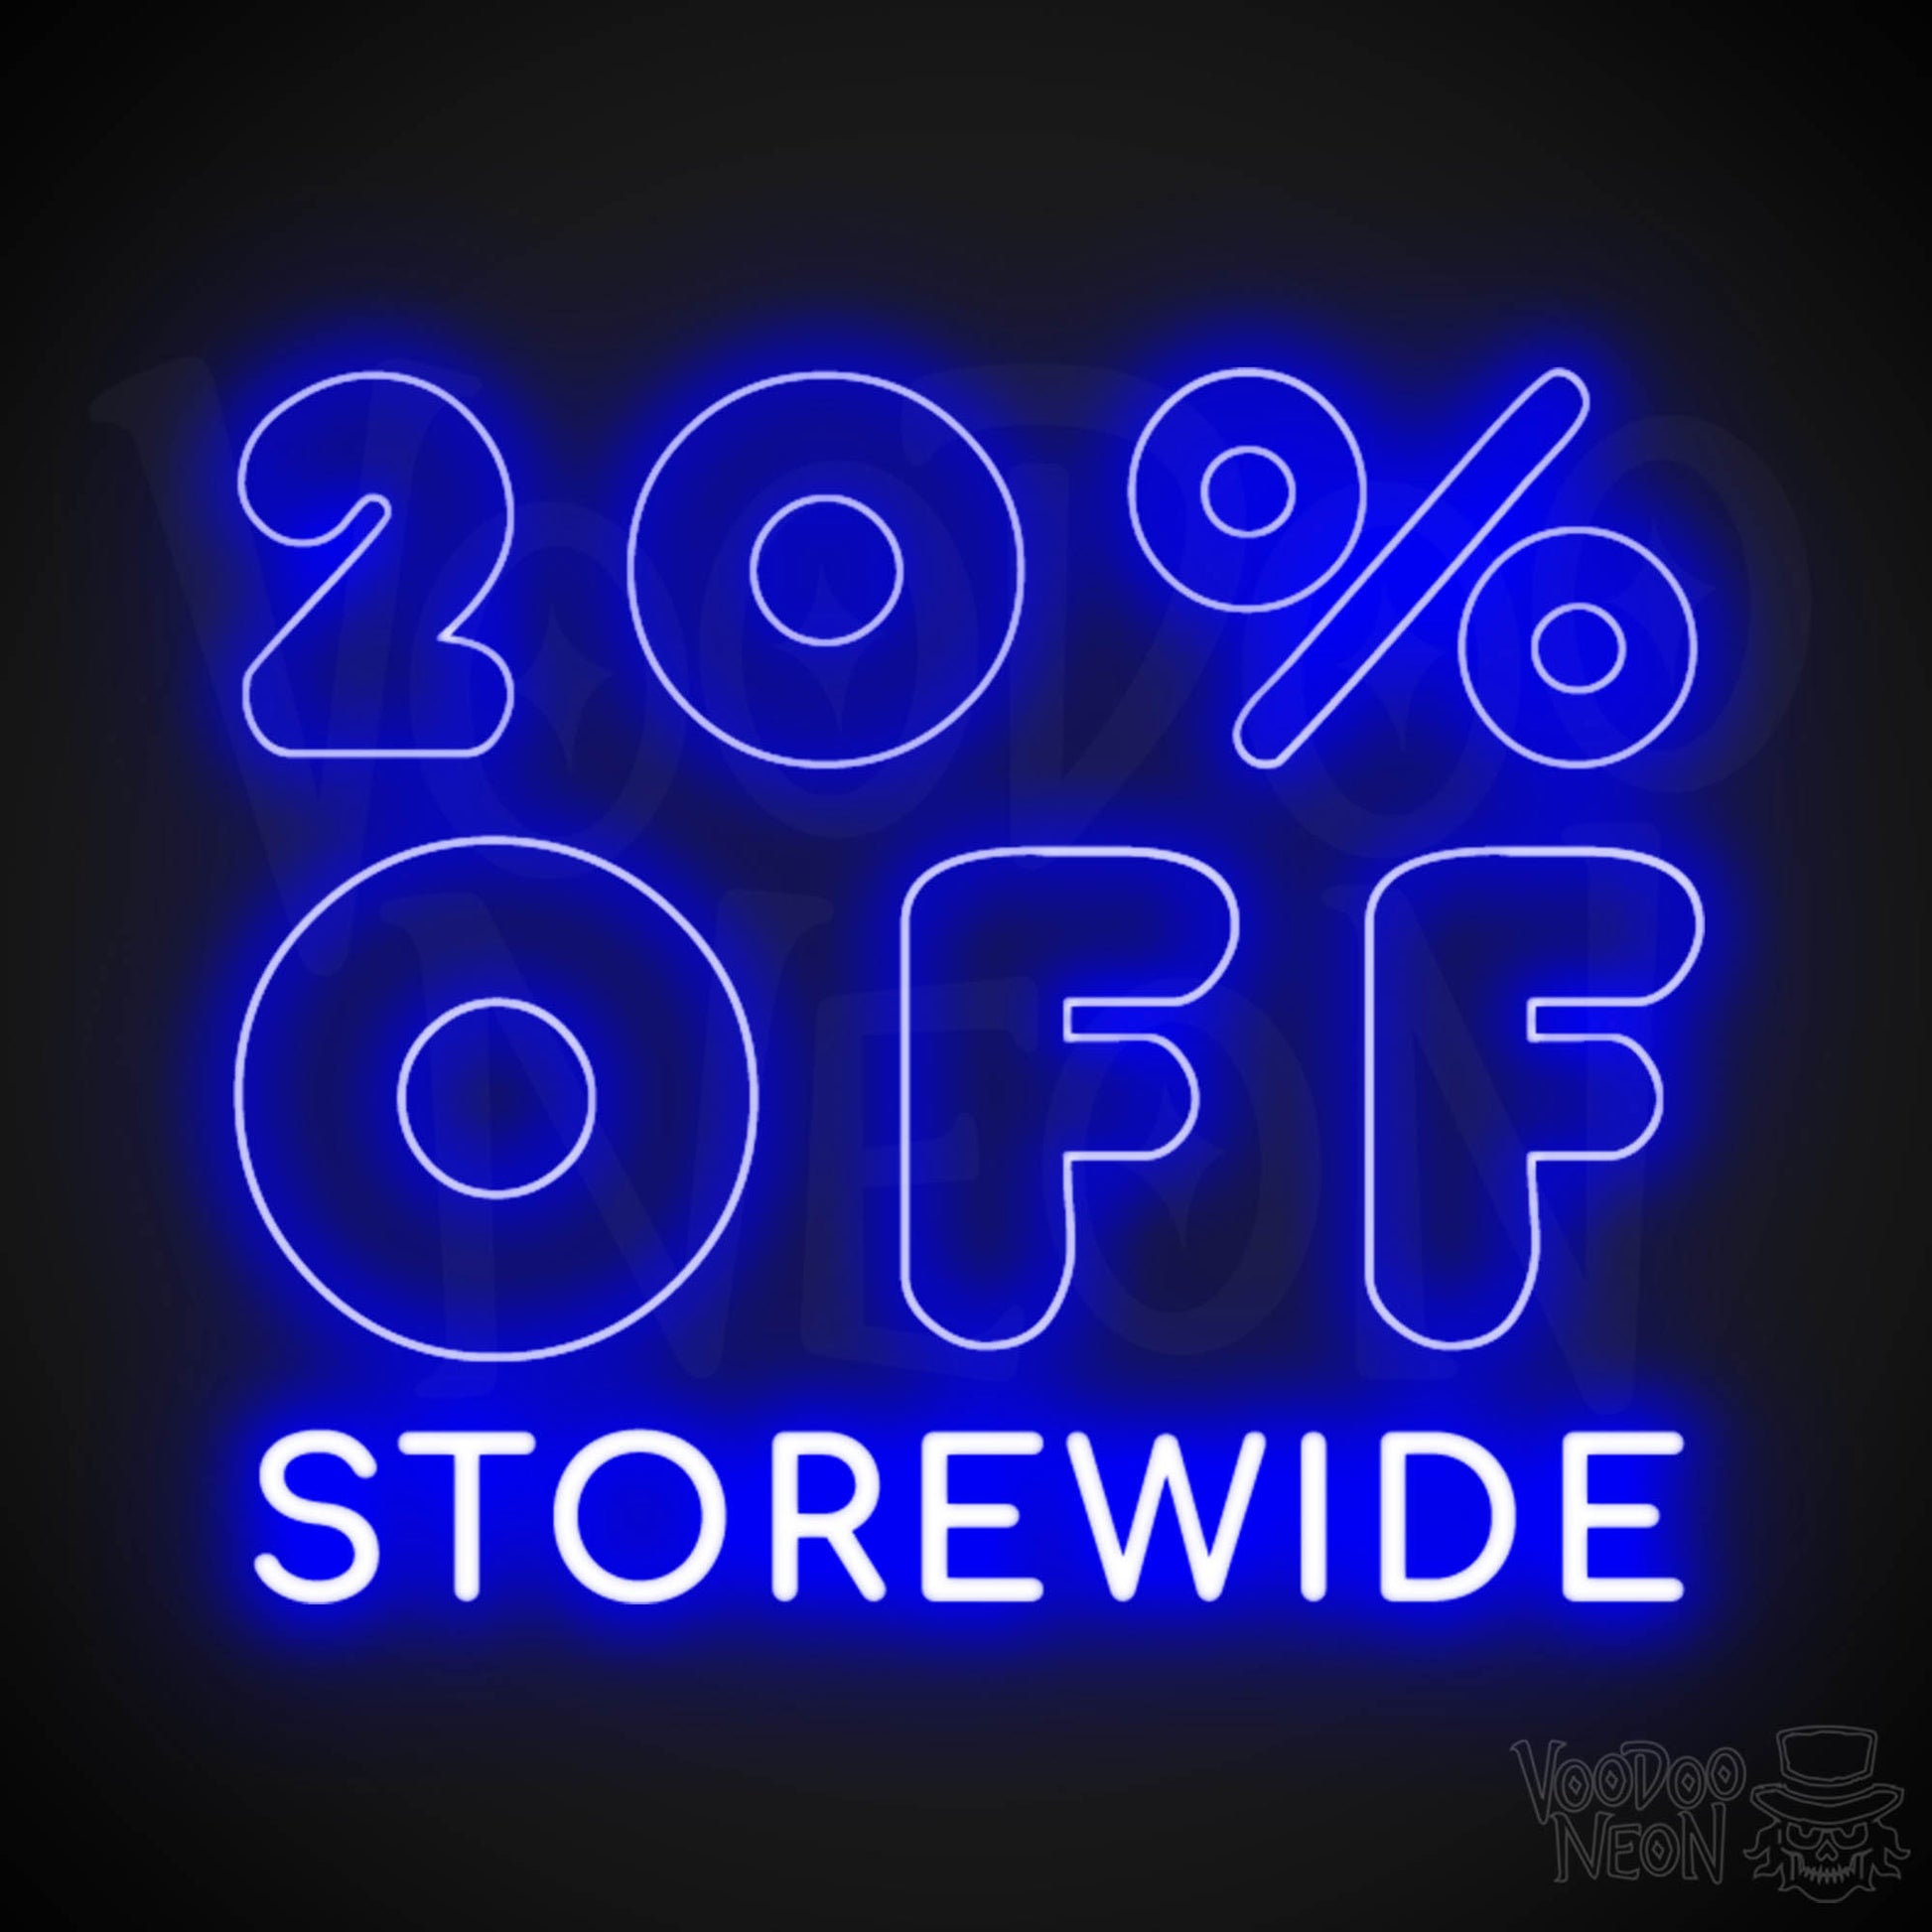 20% Off Storewide Neon Sign - 20% Off Storewide Sign - LED Shop Sign - Color Dark Blue